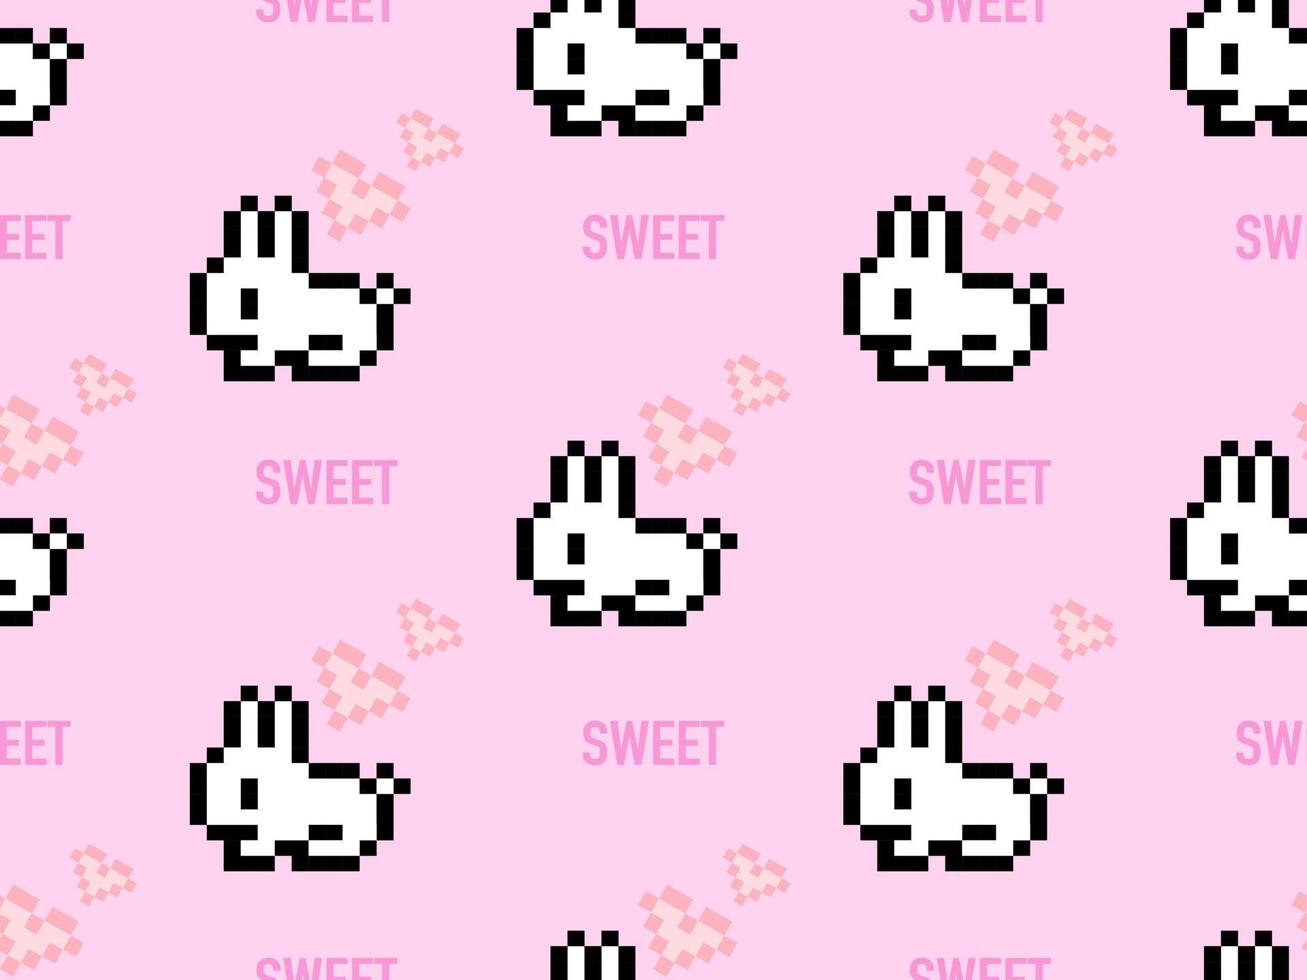 padrão sem emenda de personagem de desenho animado de coelho no fundo rosa. estilo de pixel vetor